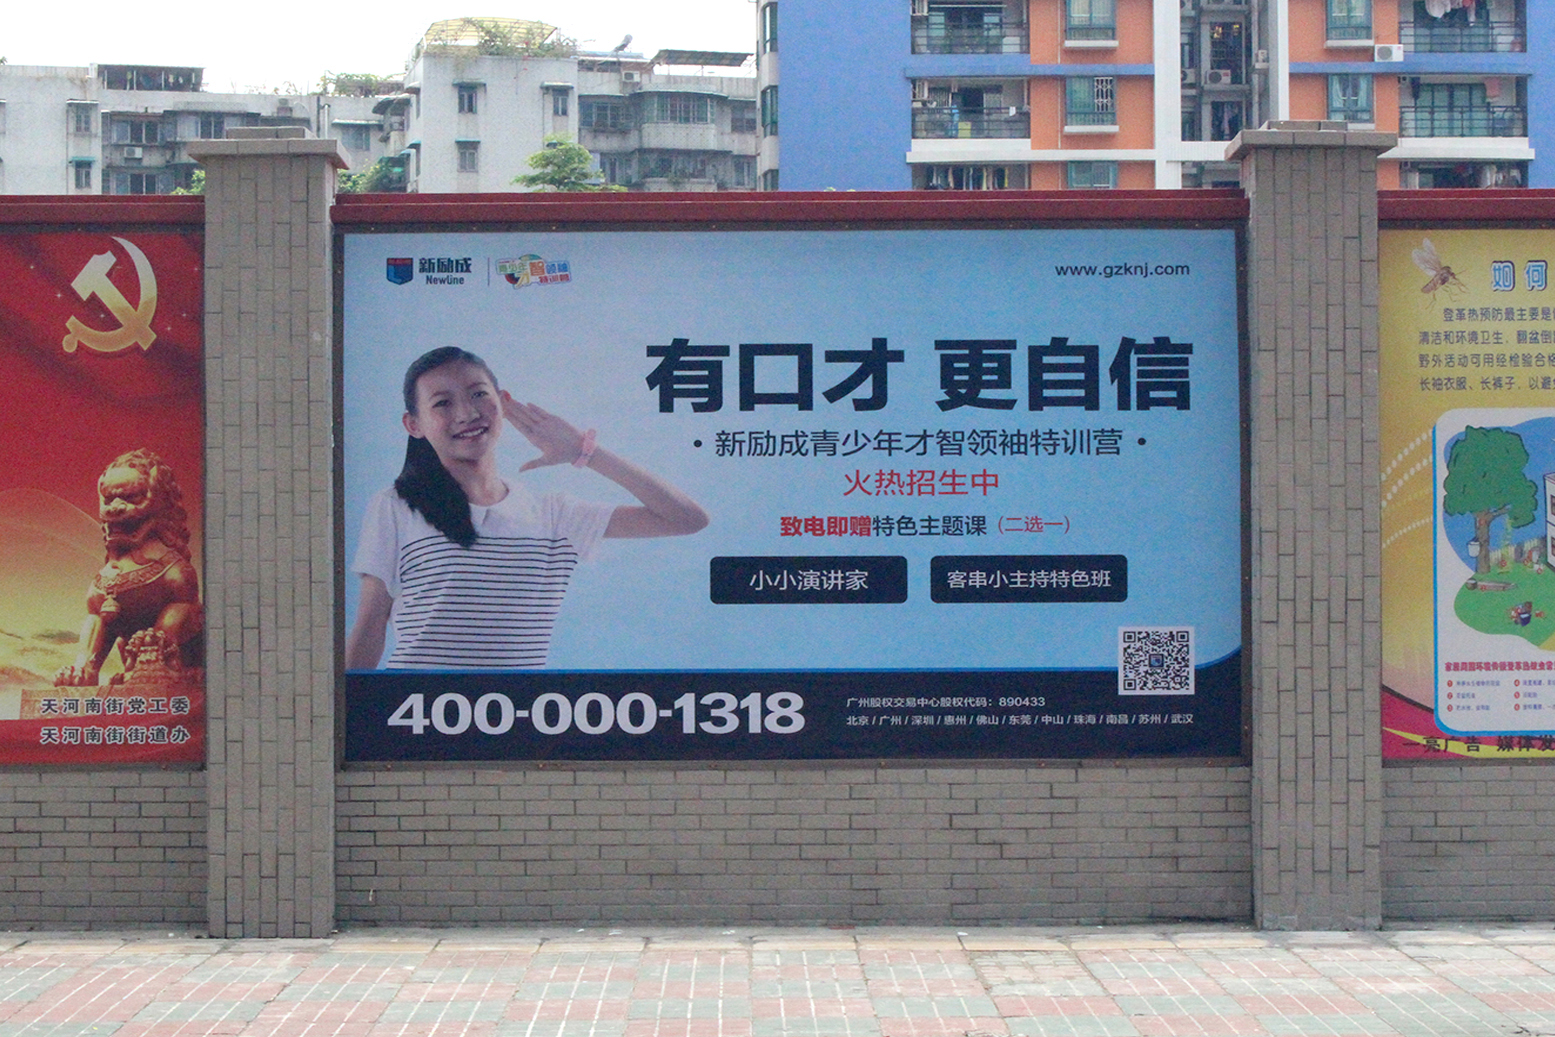 供应广州围墙广告发布/围墙广告制作